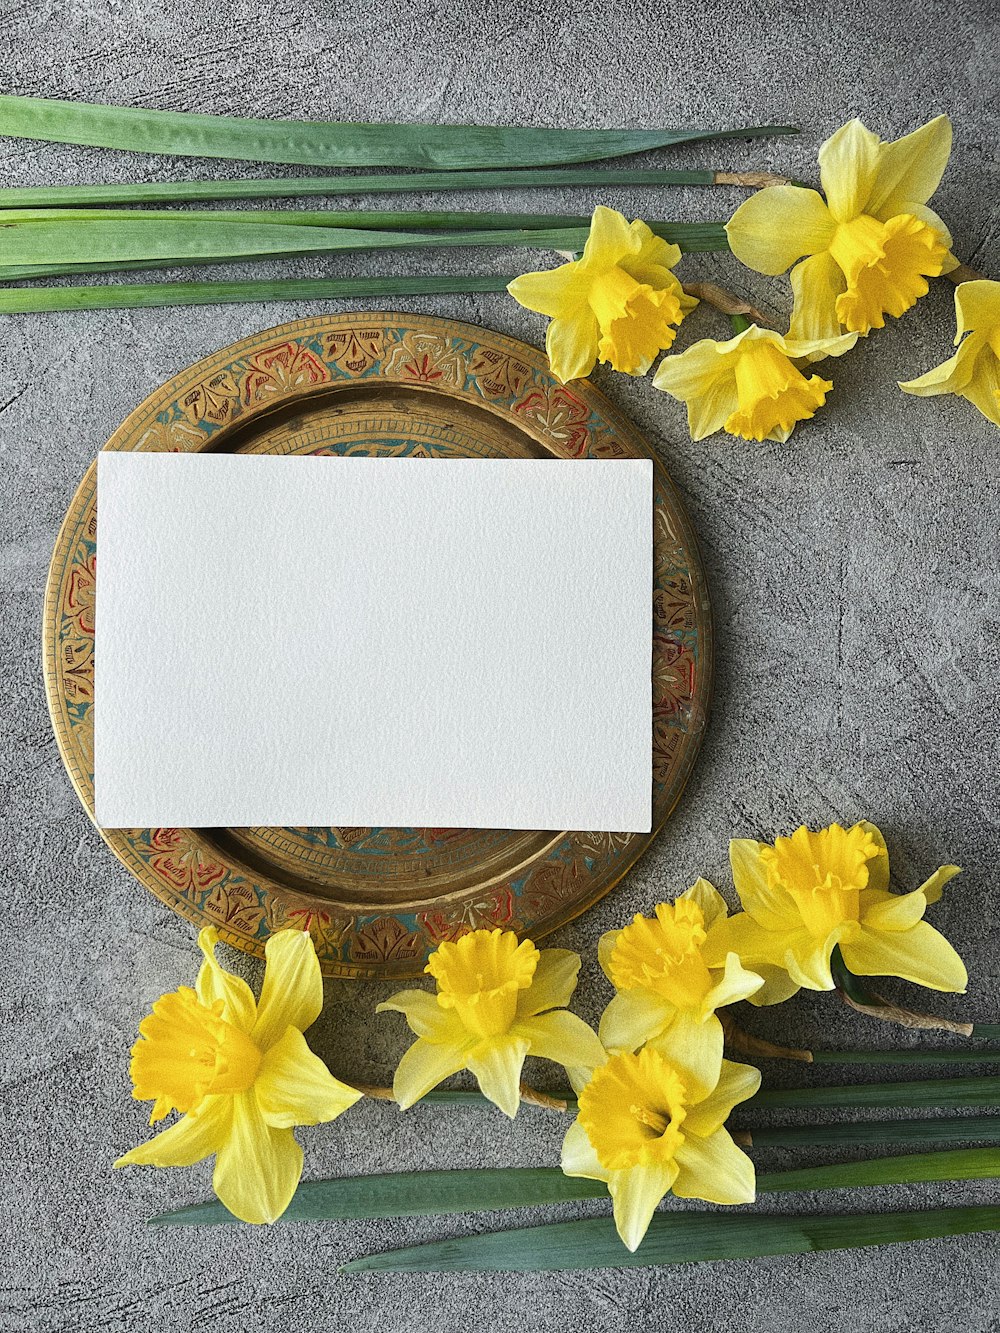 un piatto con una carta vuota accanto a fiori gialli